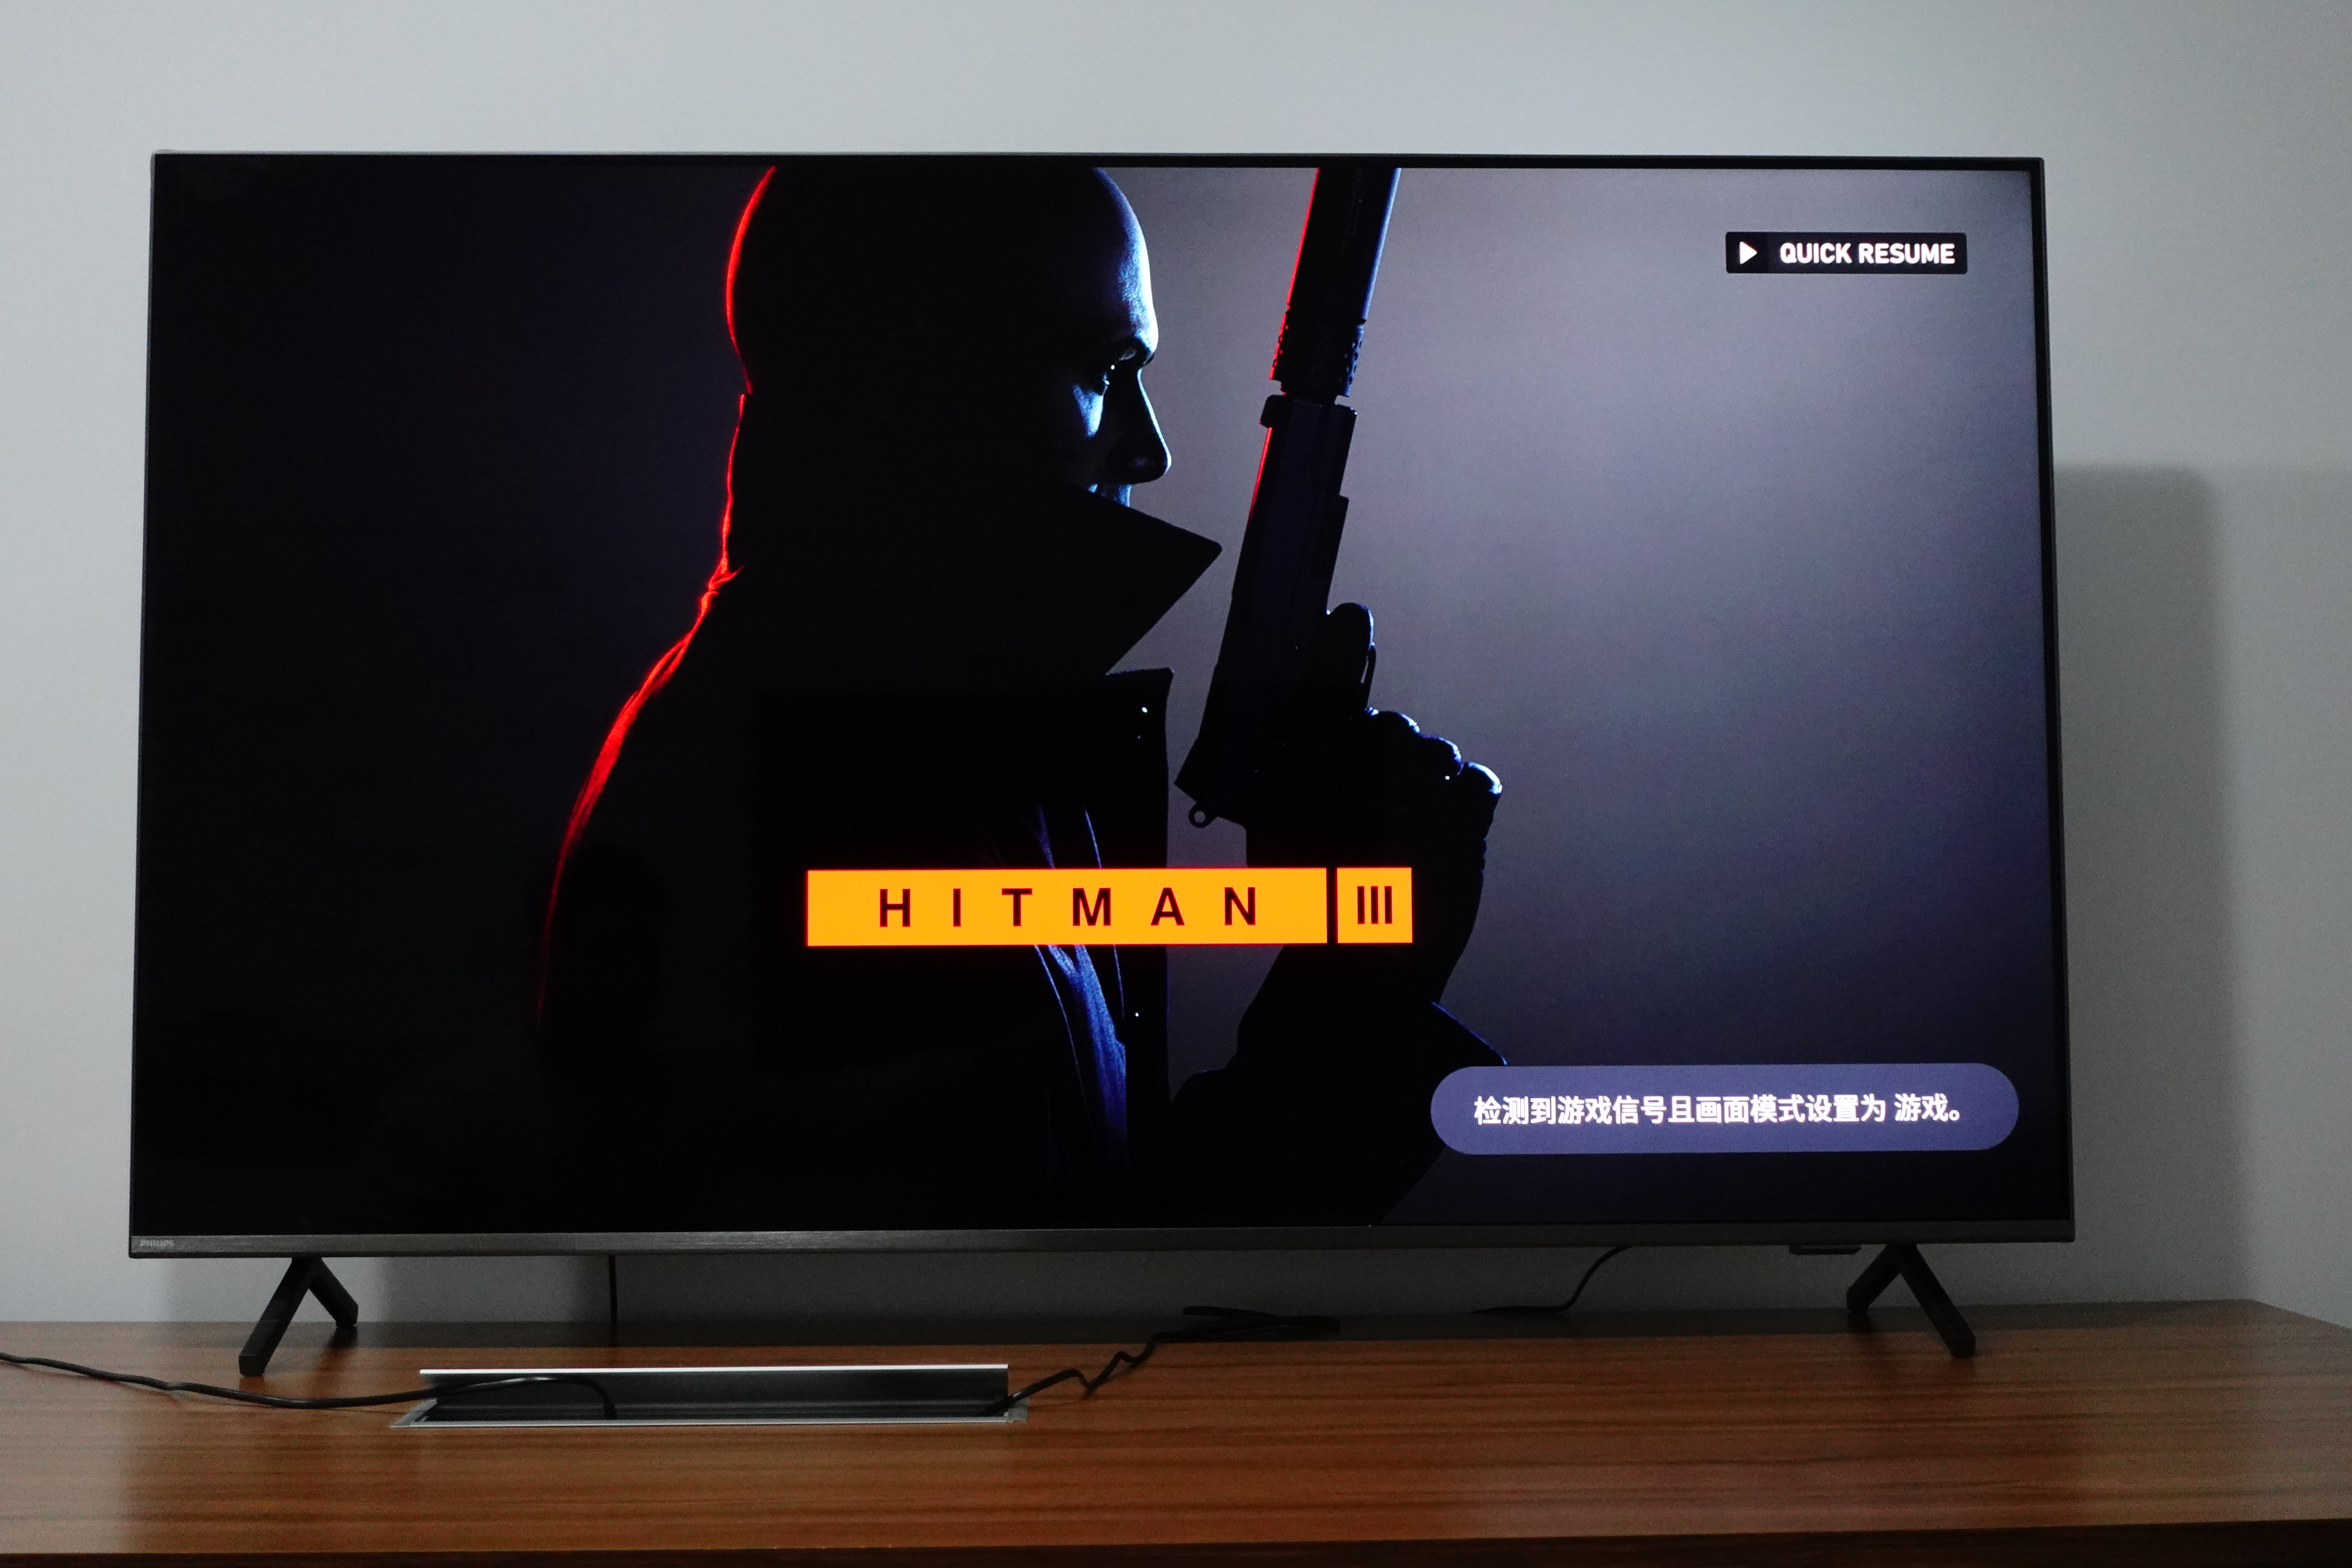 電視系統在 Xbox 啟動遊戲後自動切換至遊戲模式